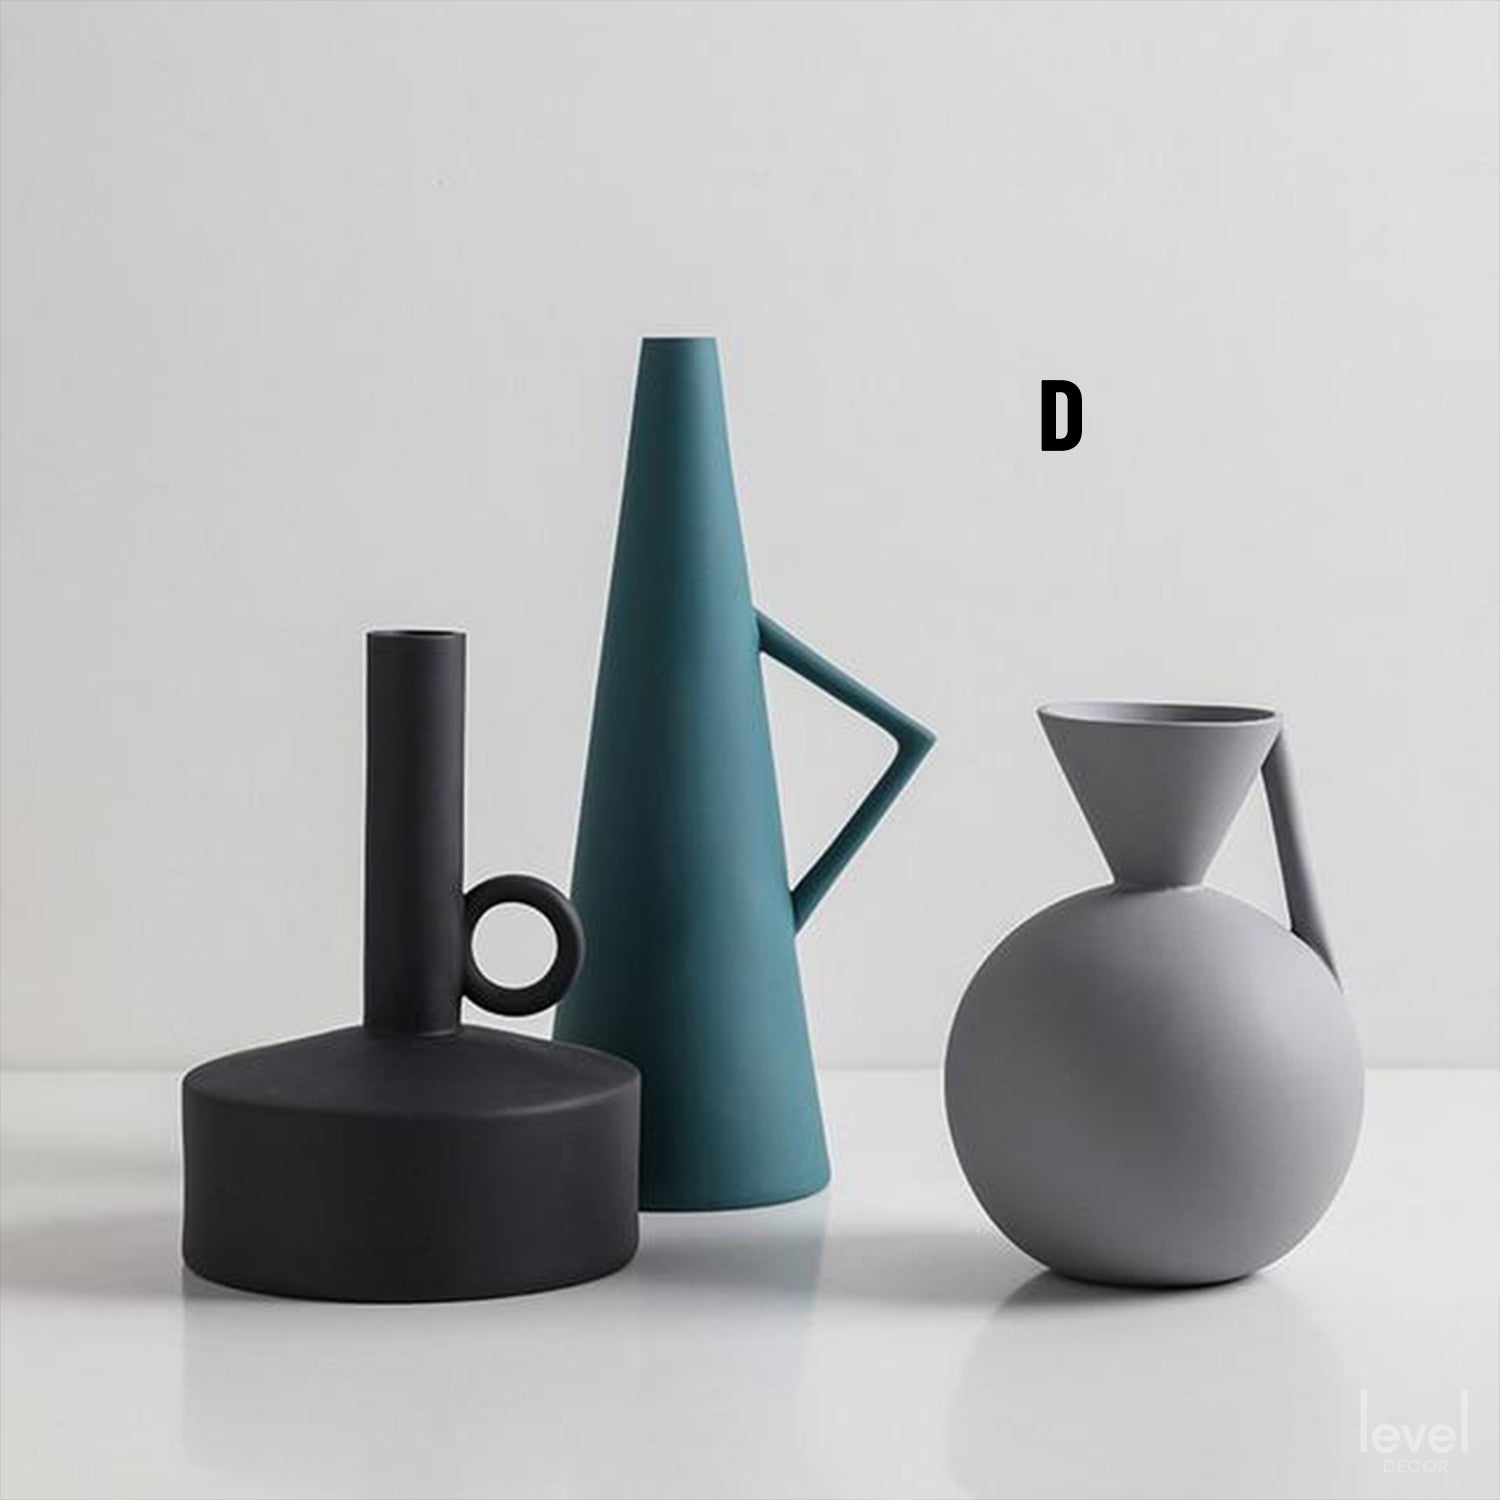 Minimalist Nordic Ceramic Vase - D - Level Decor